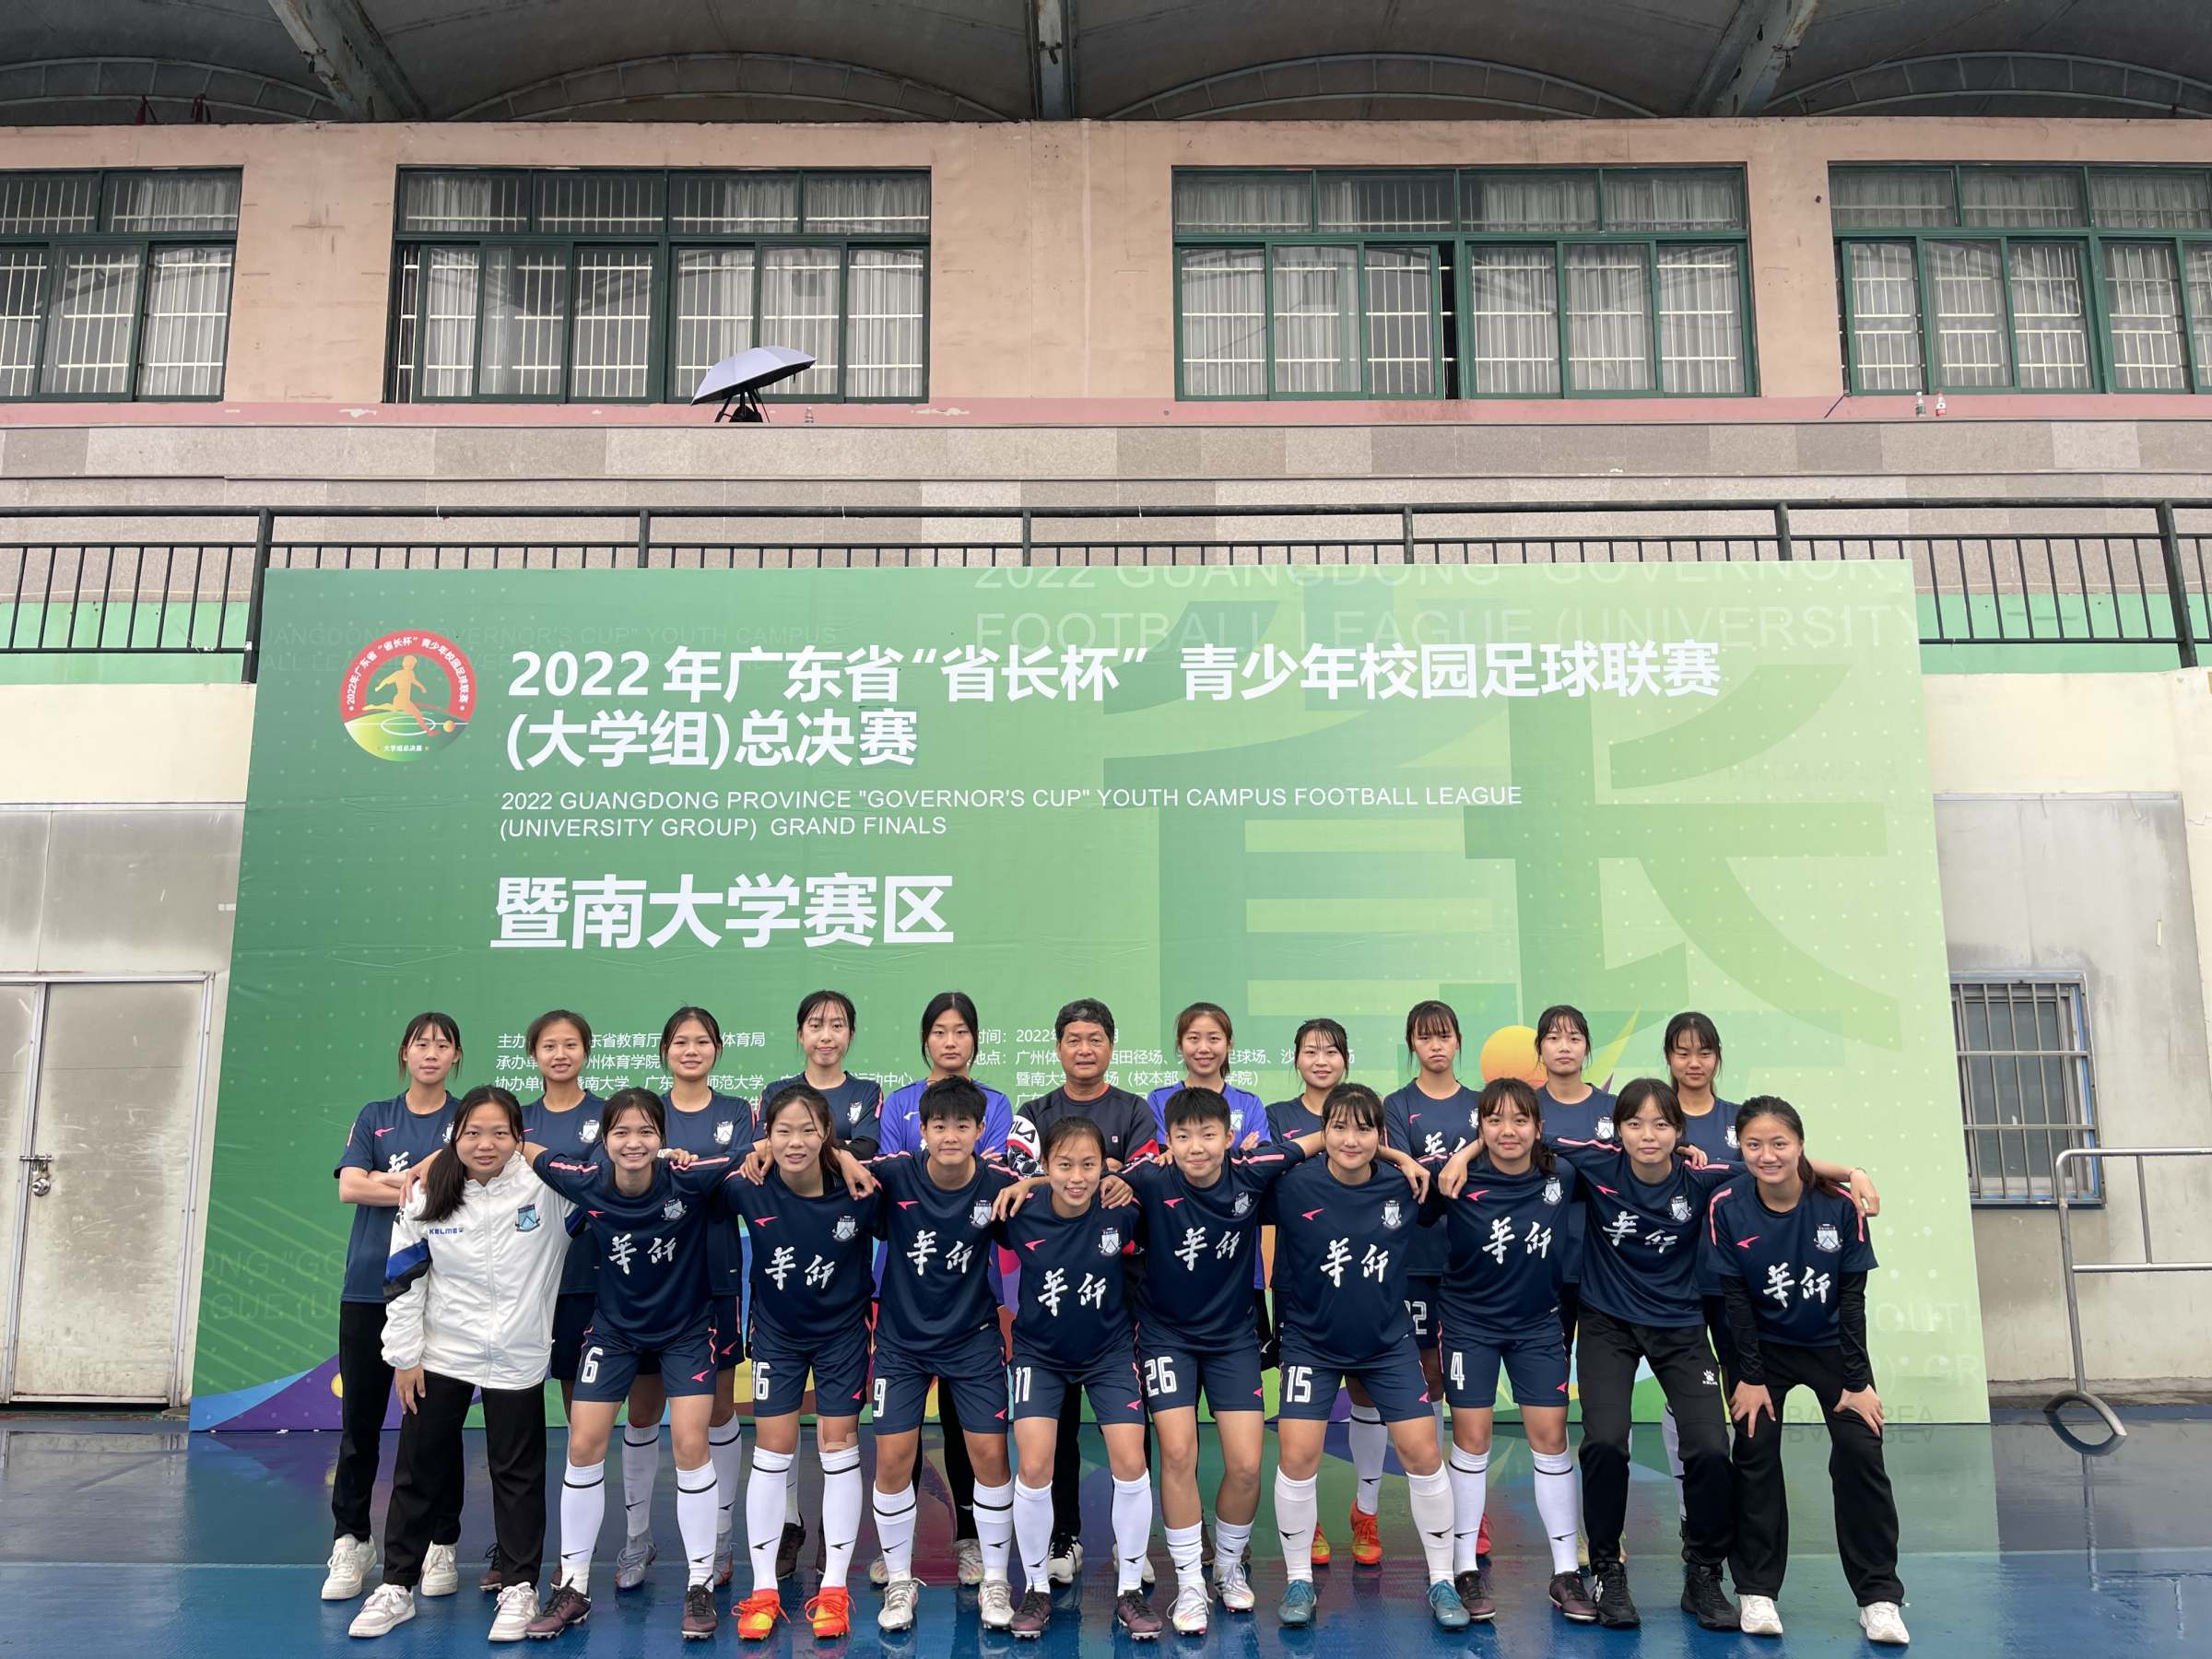 我校女子乙组足球队勇夺2022年广东省“省长杯”青少年校园足球联赛第四名